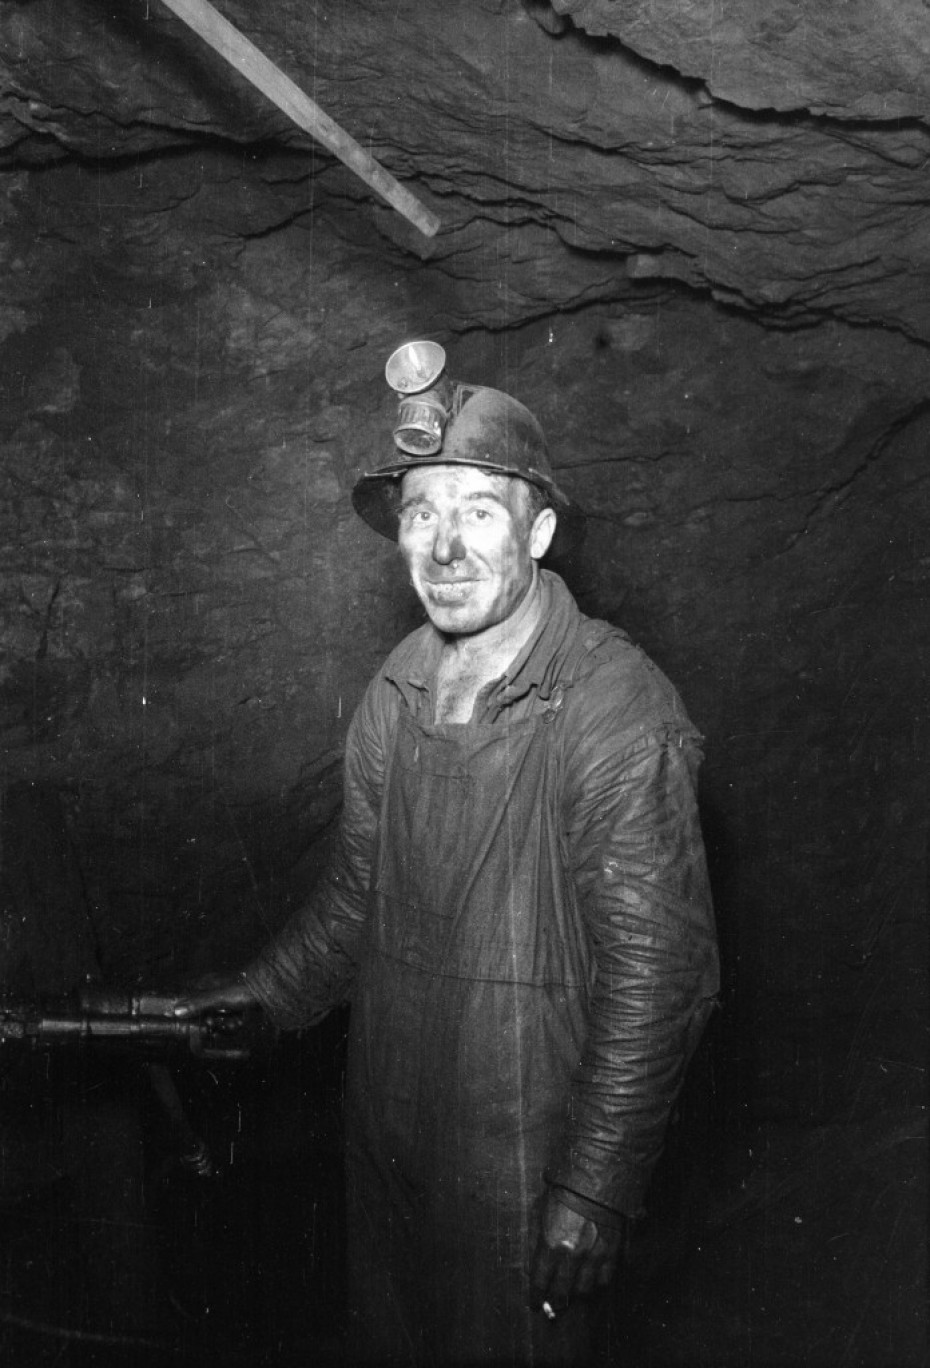 Radni dan u rudniku, Bor, 26. oktobar 1948.